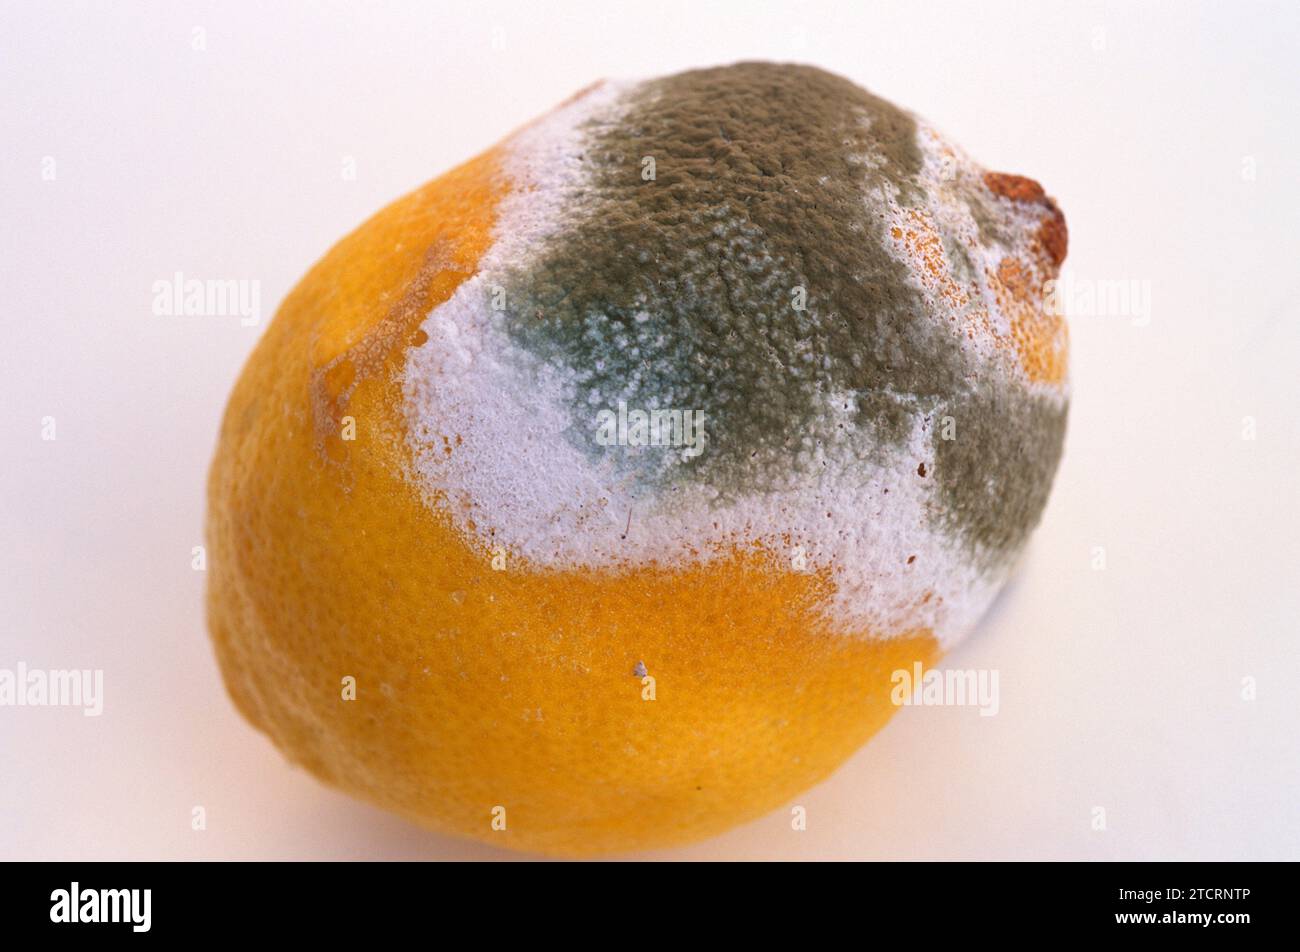 Penicillium digitatum or Aspergillus digitatus colonizing a lemon. Stock Photo